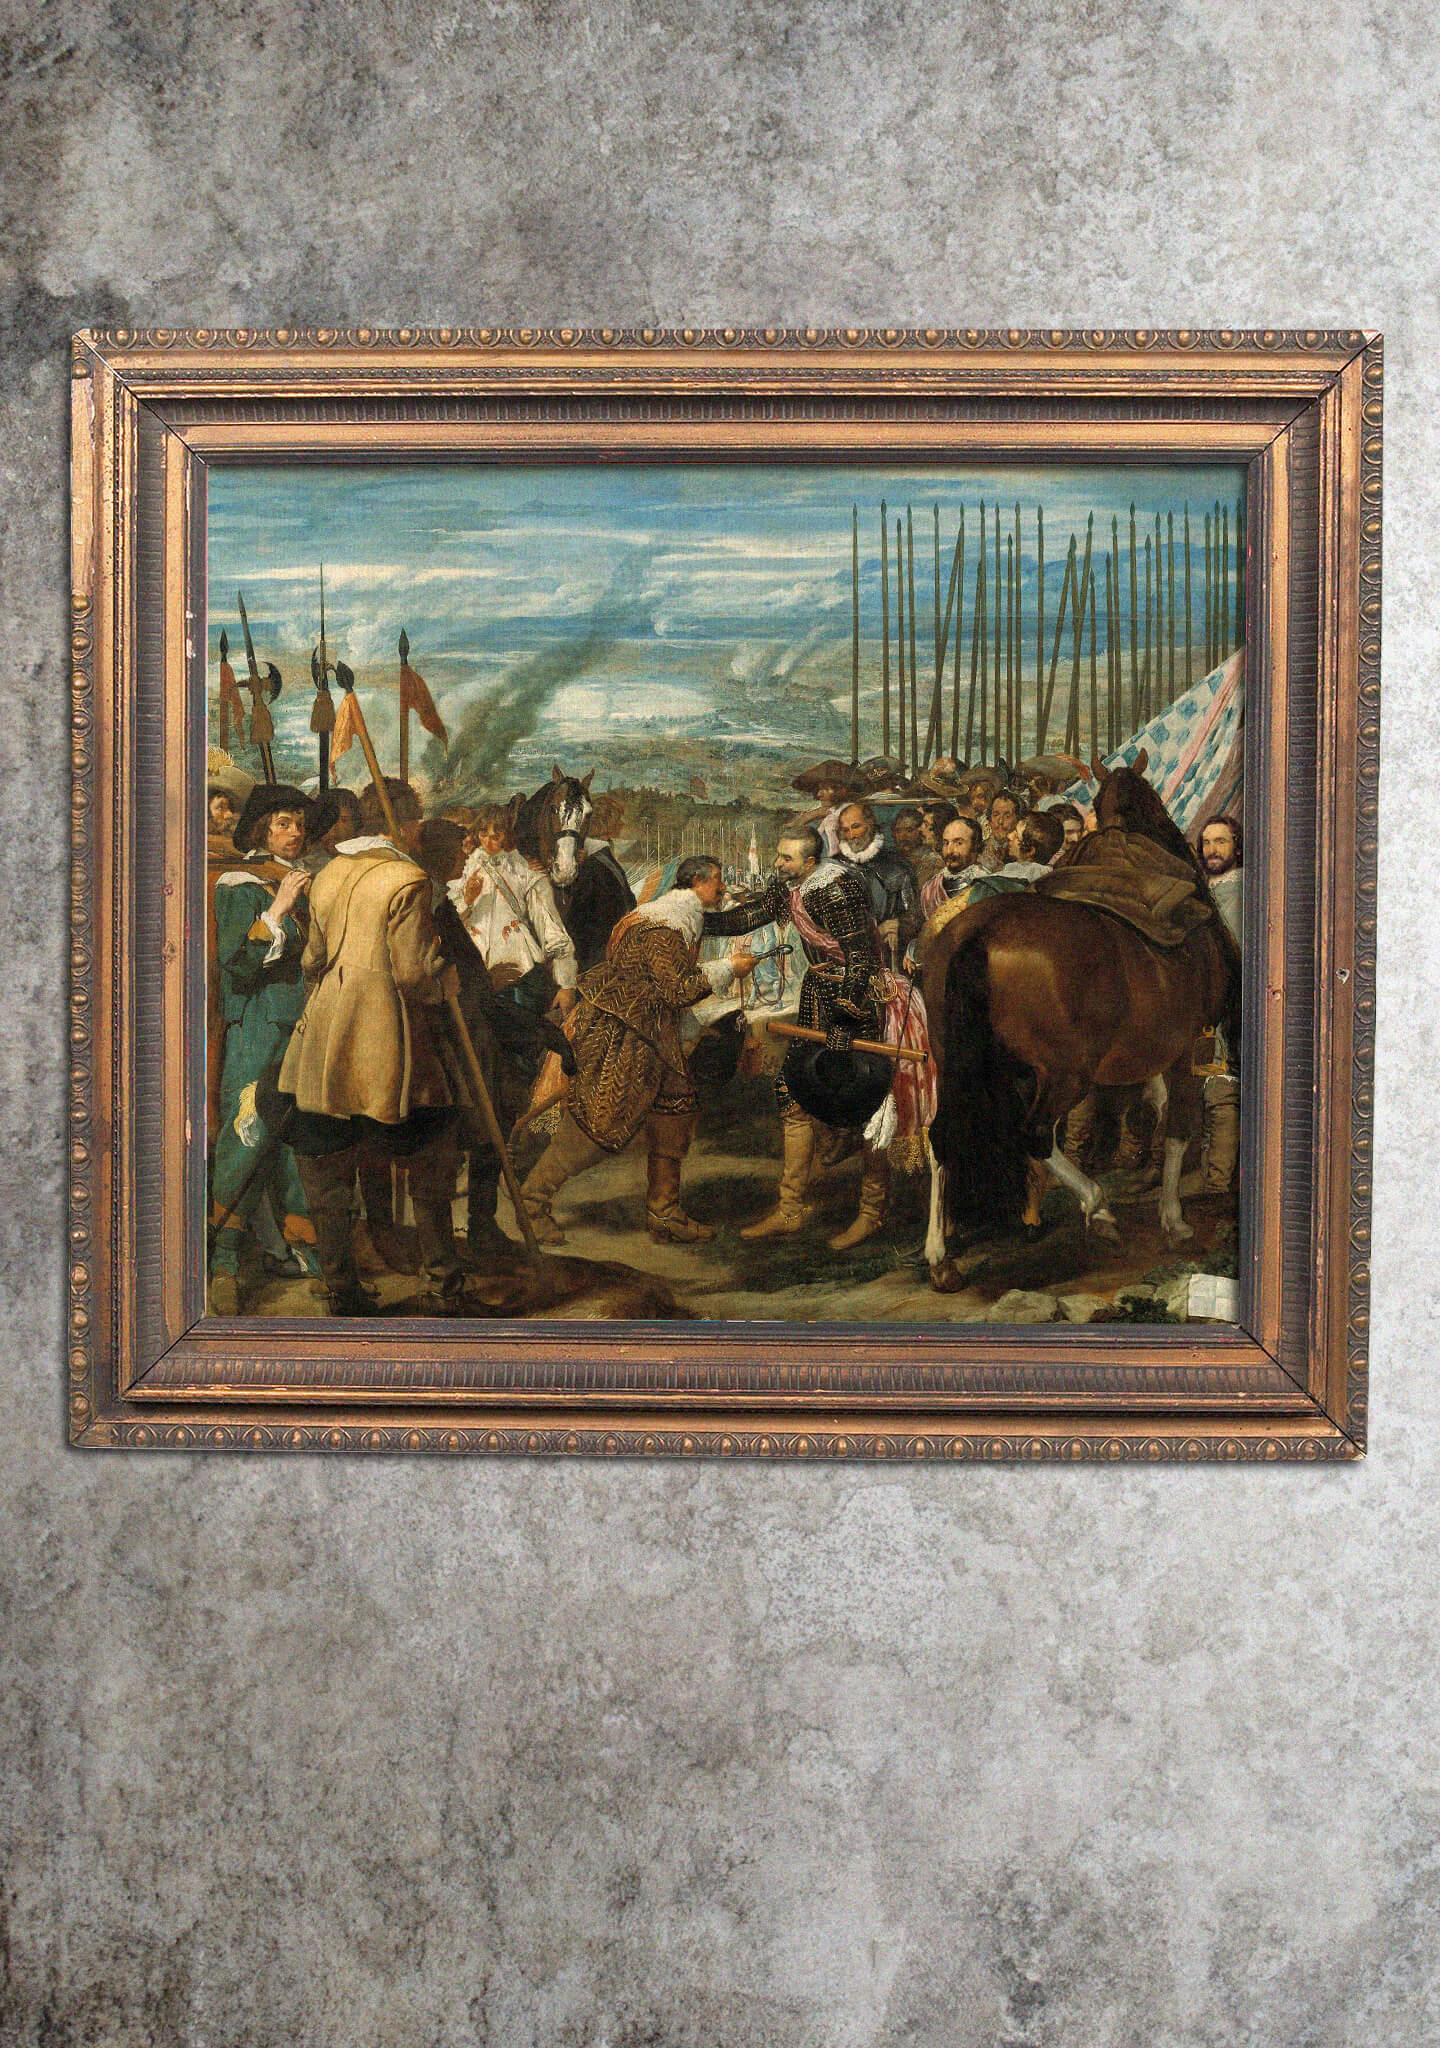 'La rendición de Breda', también conocida como 'Las lanzas'